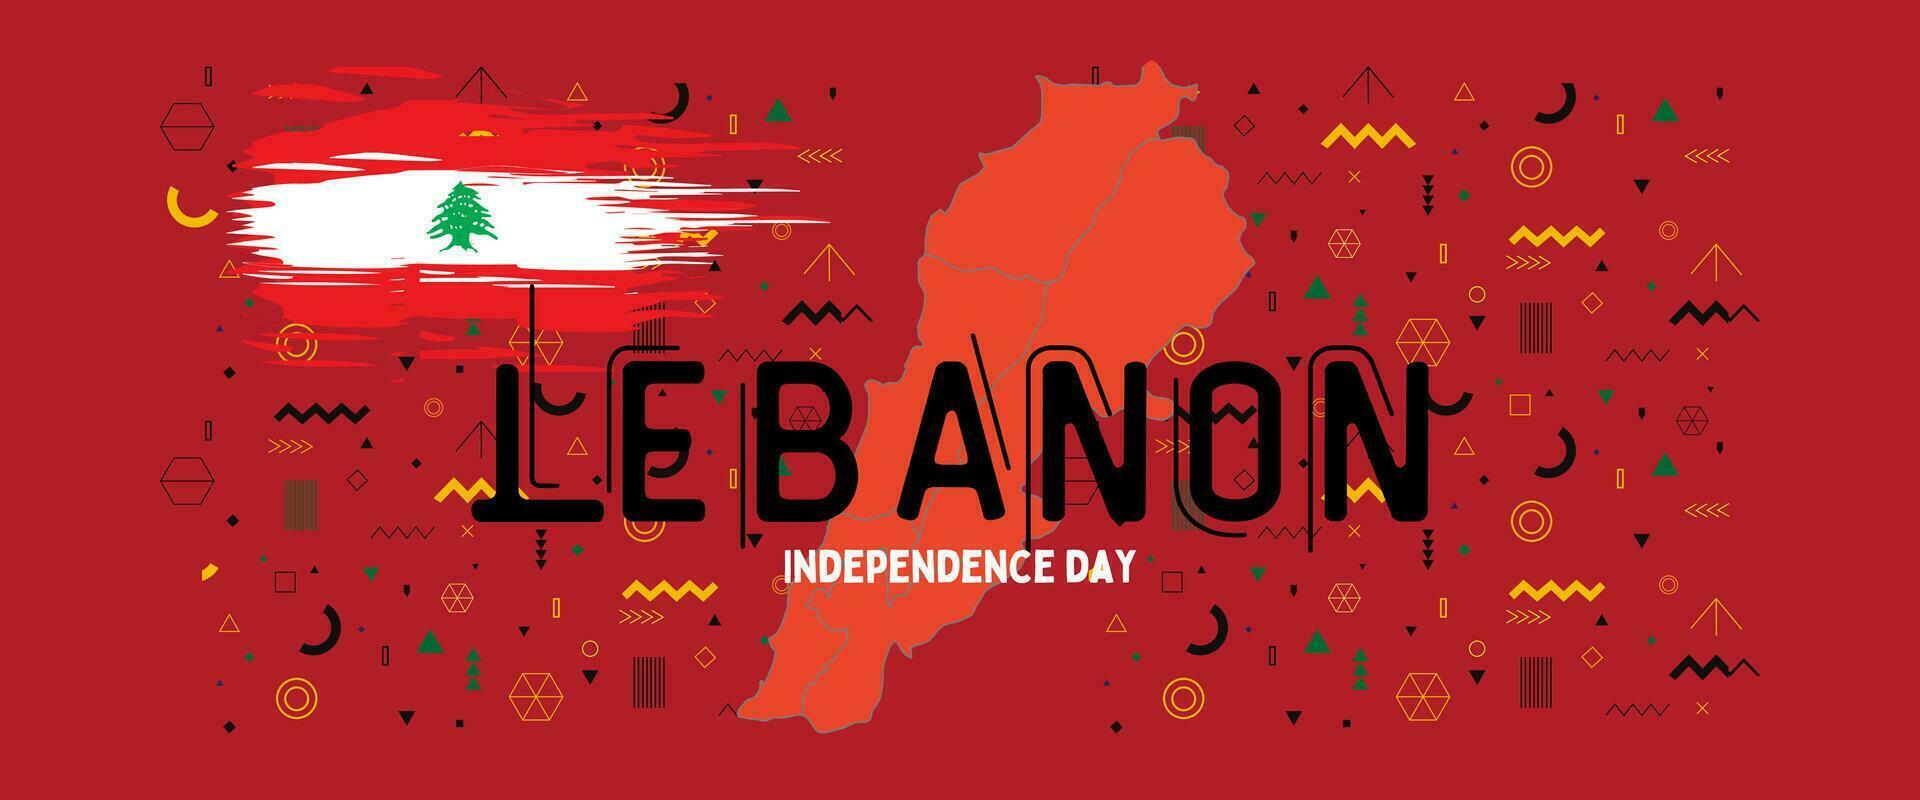 Libanon nationaal dag voor onafhankelijkheid dag verjaardag, met kaarten van Libanon en achtergrond van vlag Libanon. vector